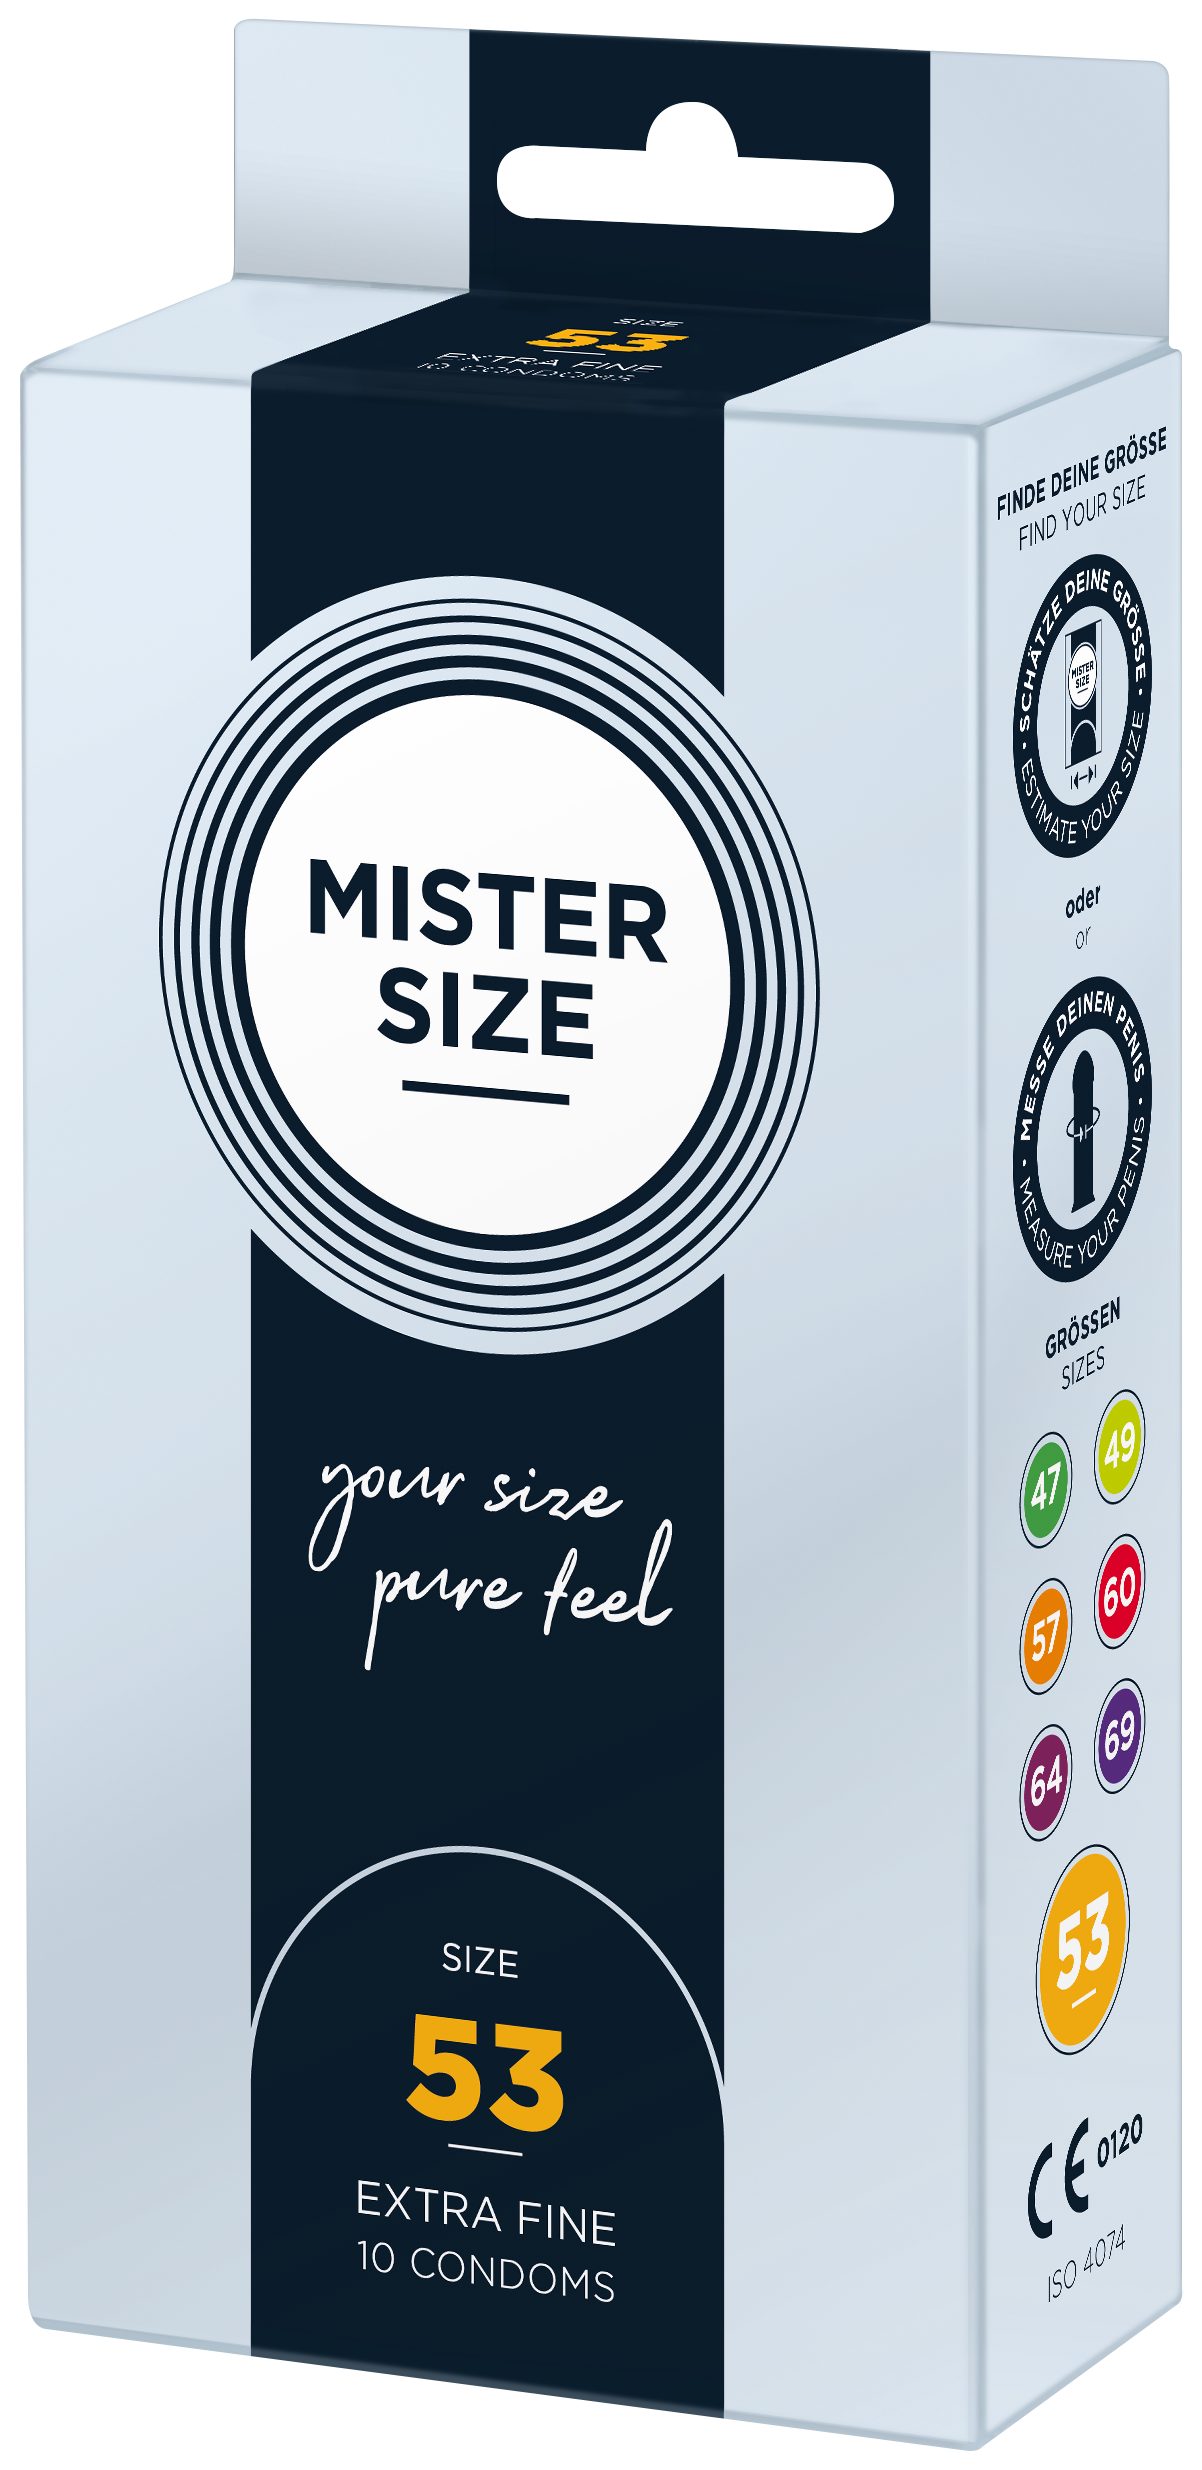 MISTER Stück, Breite & Kondome Nominale 53mm, feucht SIZE 10 gefühlsecht